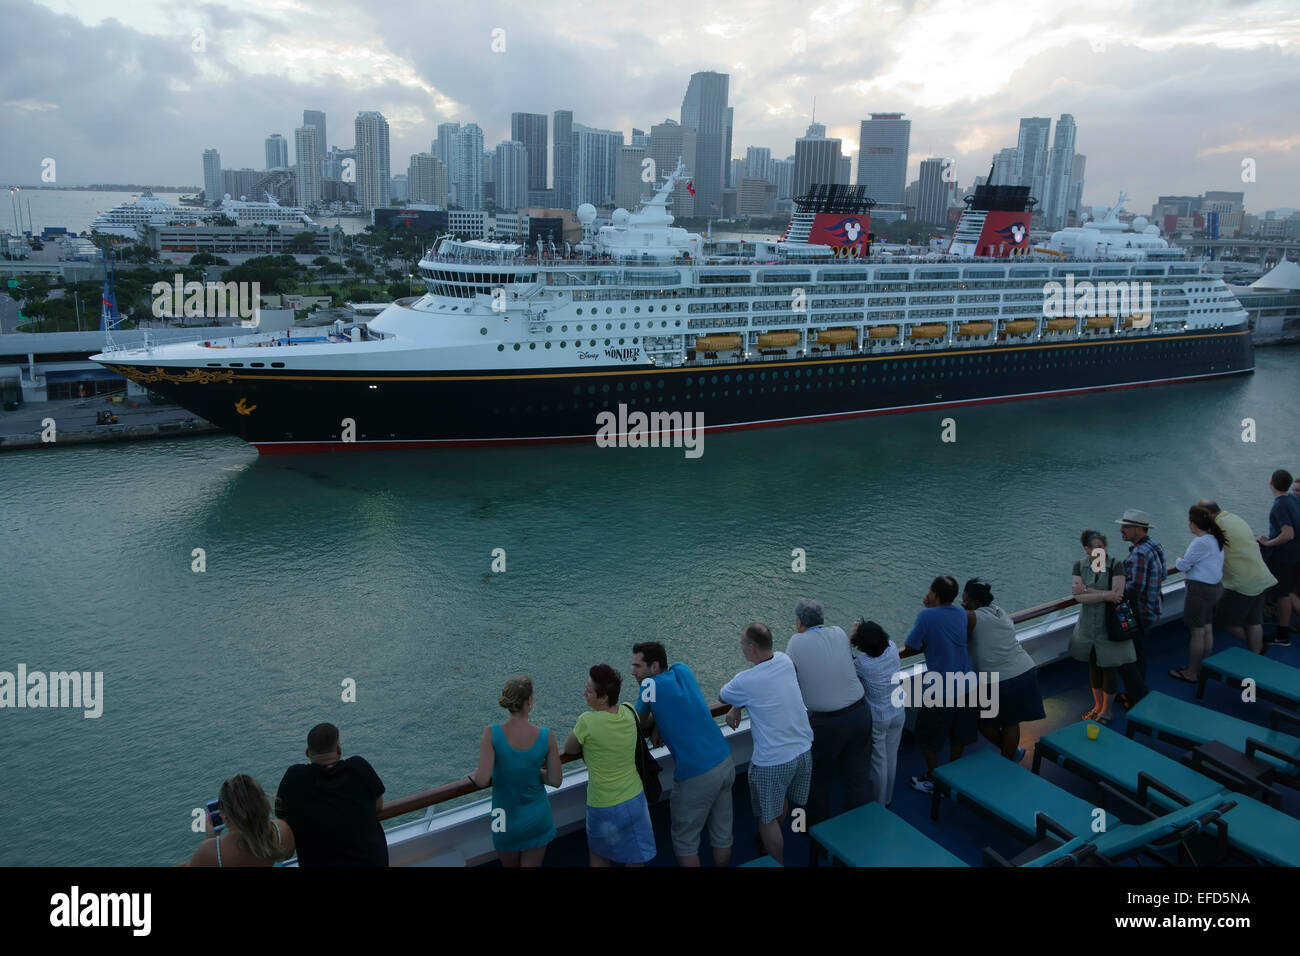 Crucero de disney miami fotografías e imágenes de alta resolución - Alamy